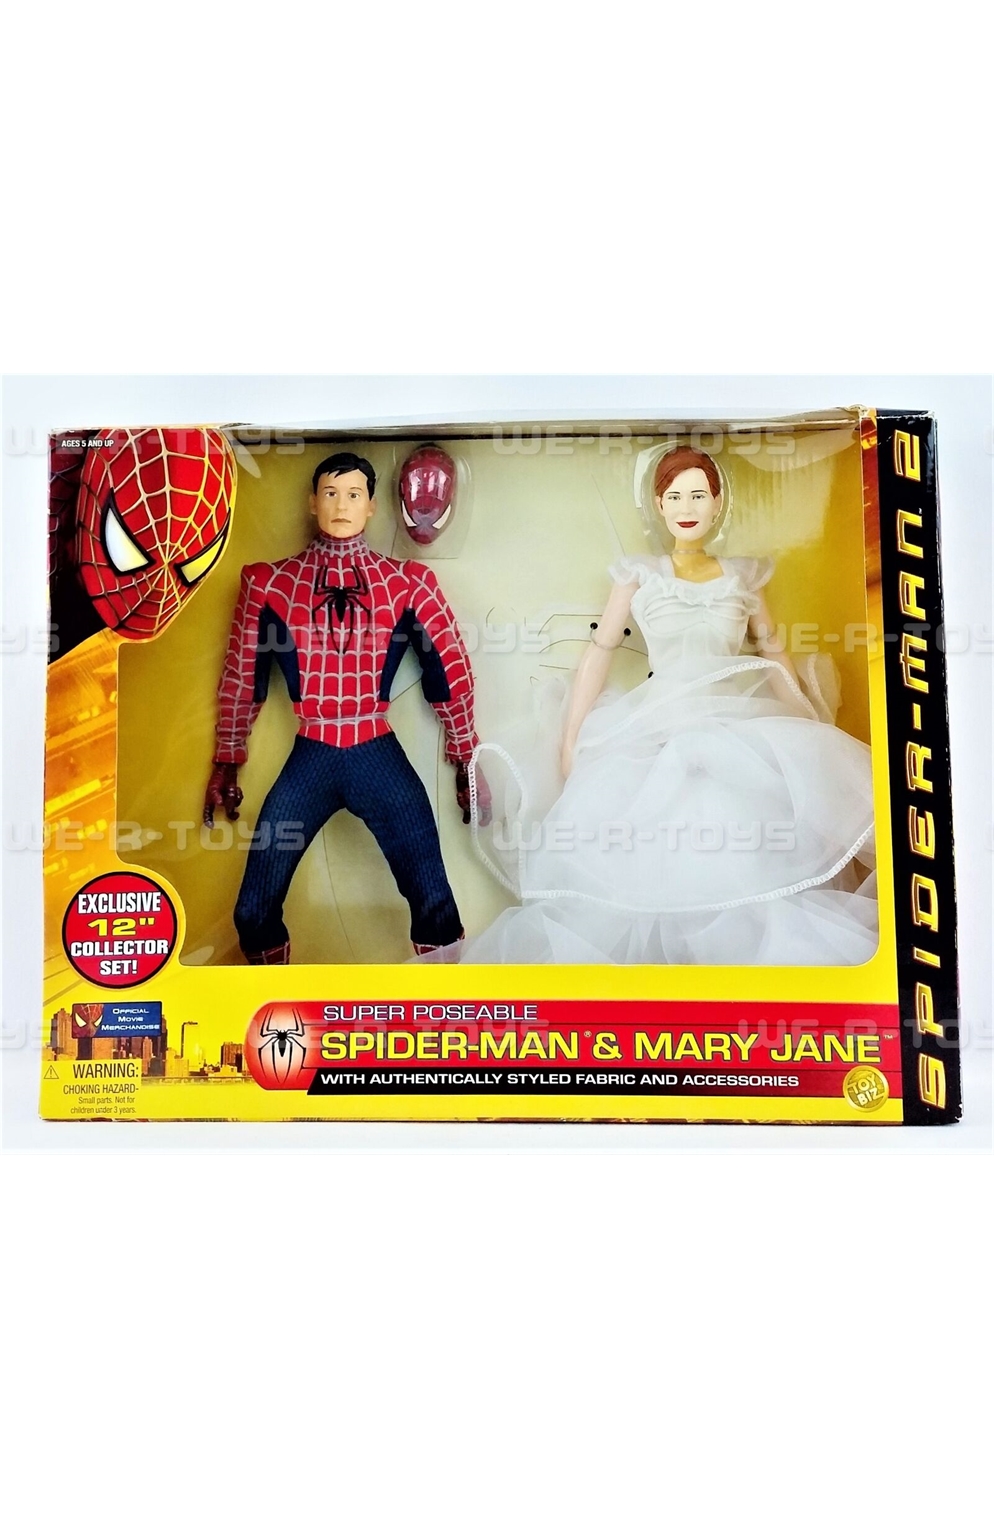 Toy Biz 2004 Spider-Man & Mary Jane Exclusive 12" Collector Set